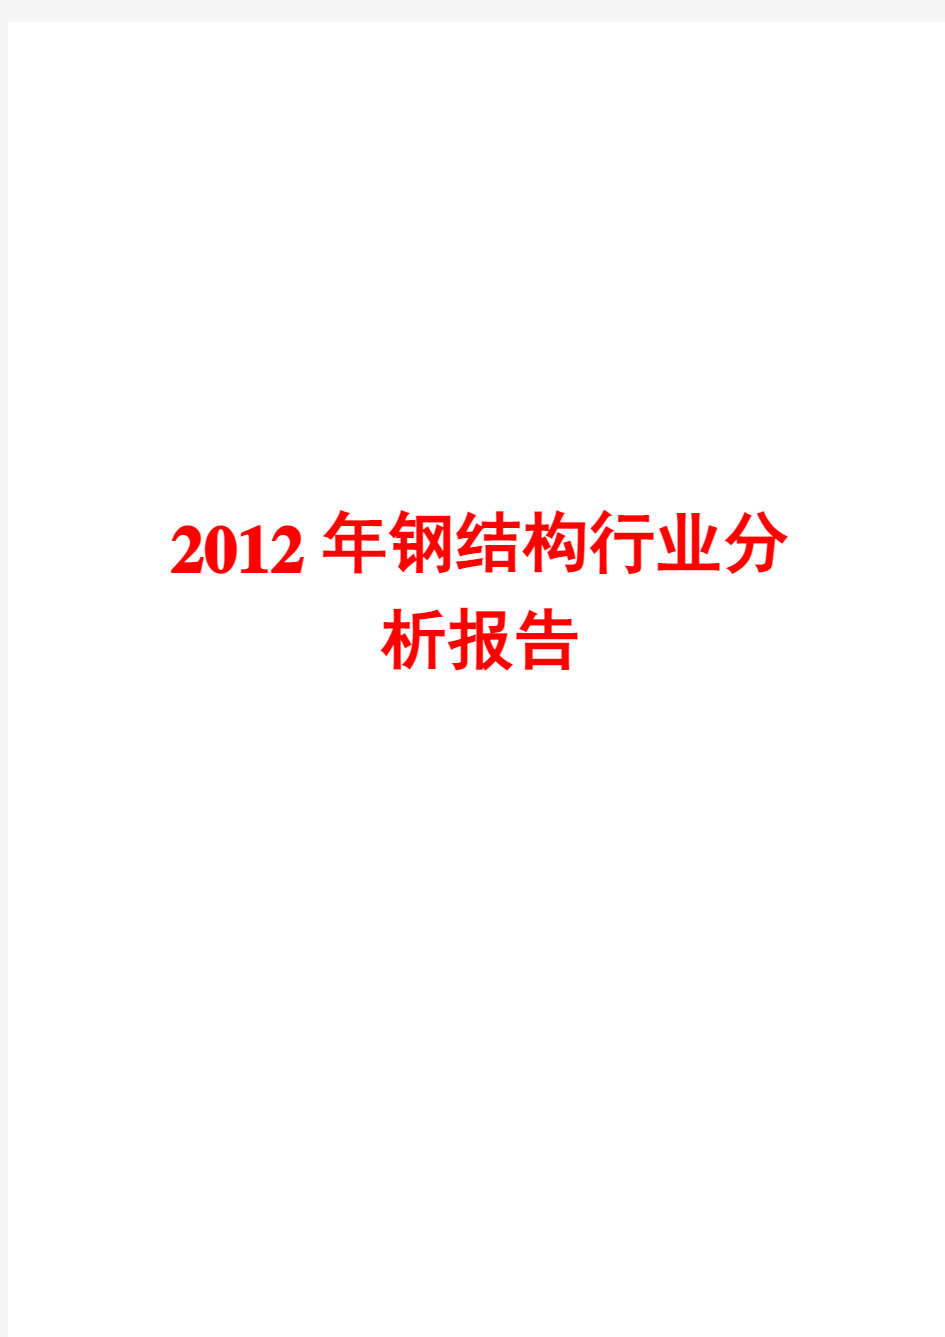 2012年钢结构行业分析报告